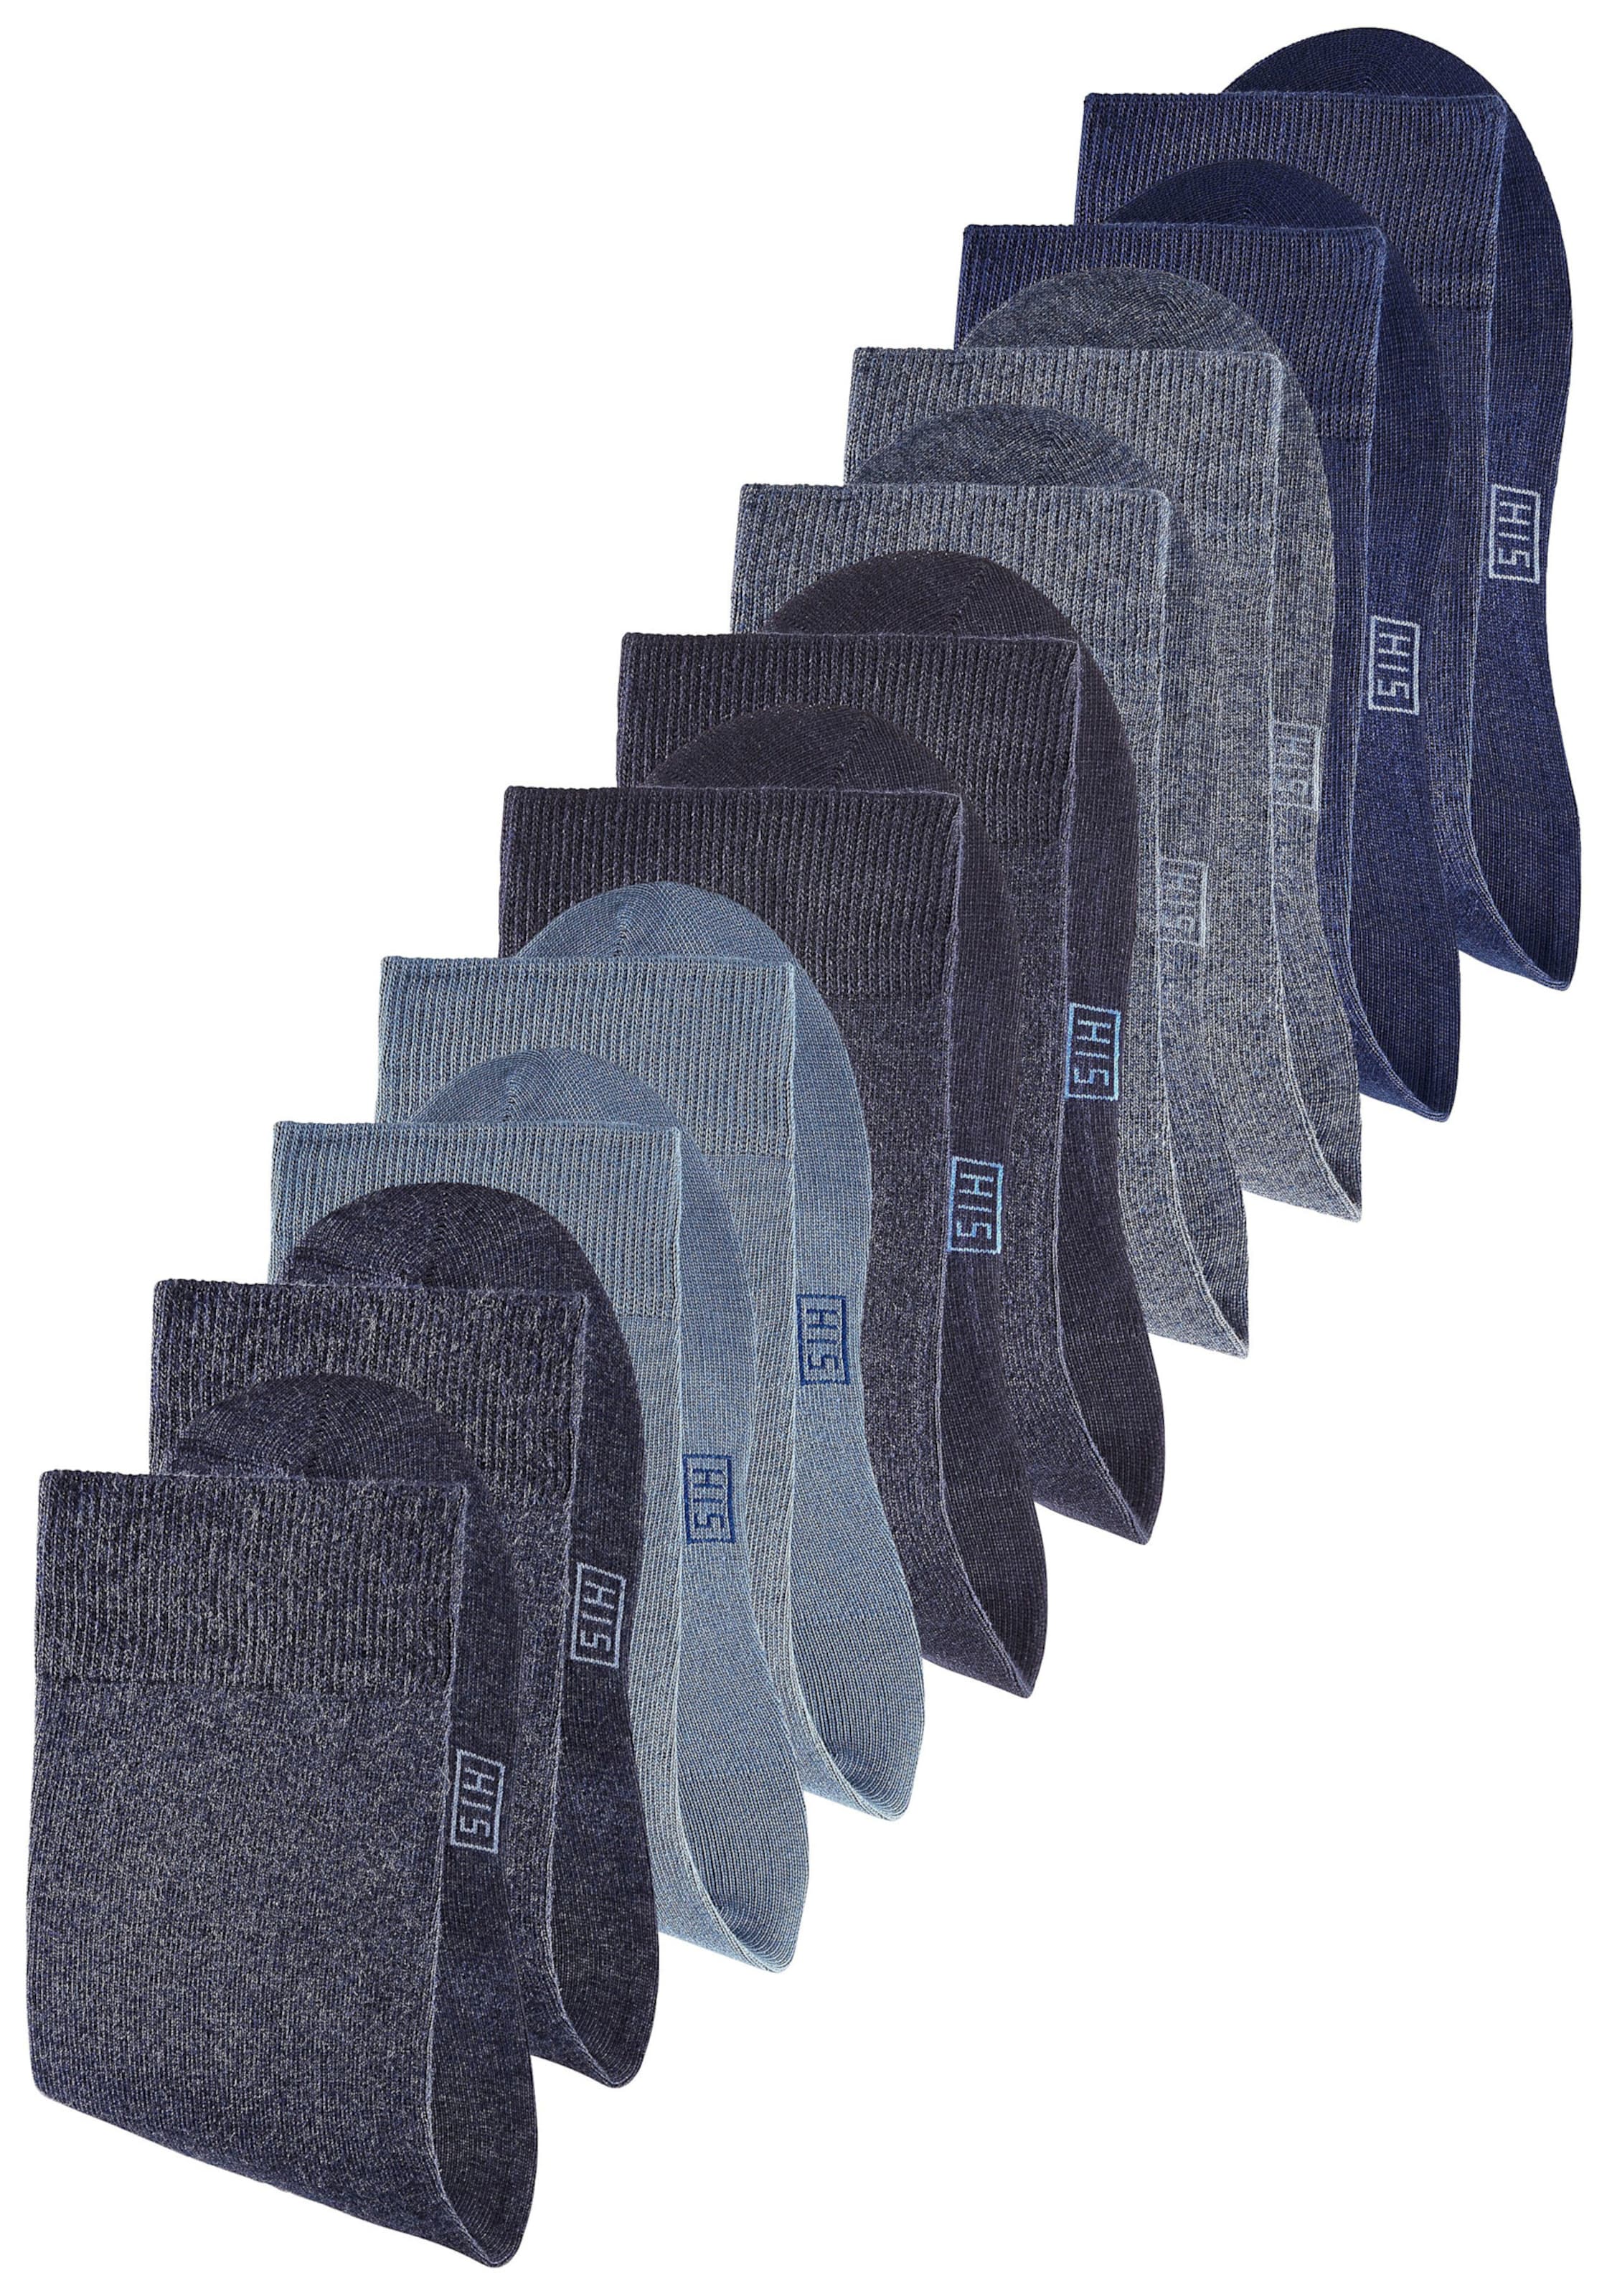 ck Jeans günstig Kaufen-Kurzsocken in marine, jeans, dunkelblau von H.I.S. Kurzsocken in marine, jeans, dunkelblau von H.I.S <![CDATA[Vielseitige Basic Kurzsocken für jede Gelegenheit. Einfach nach Lust und Laune kombinieren. Eine gute Elastizität sichert eine optimale Passfor